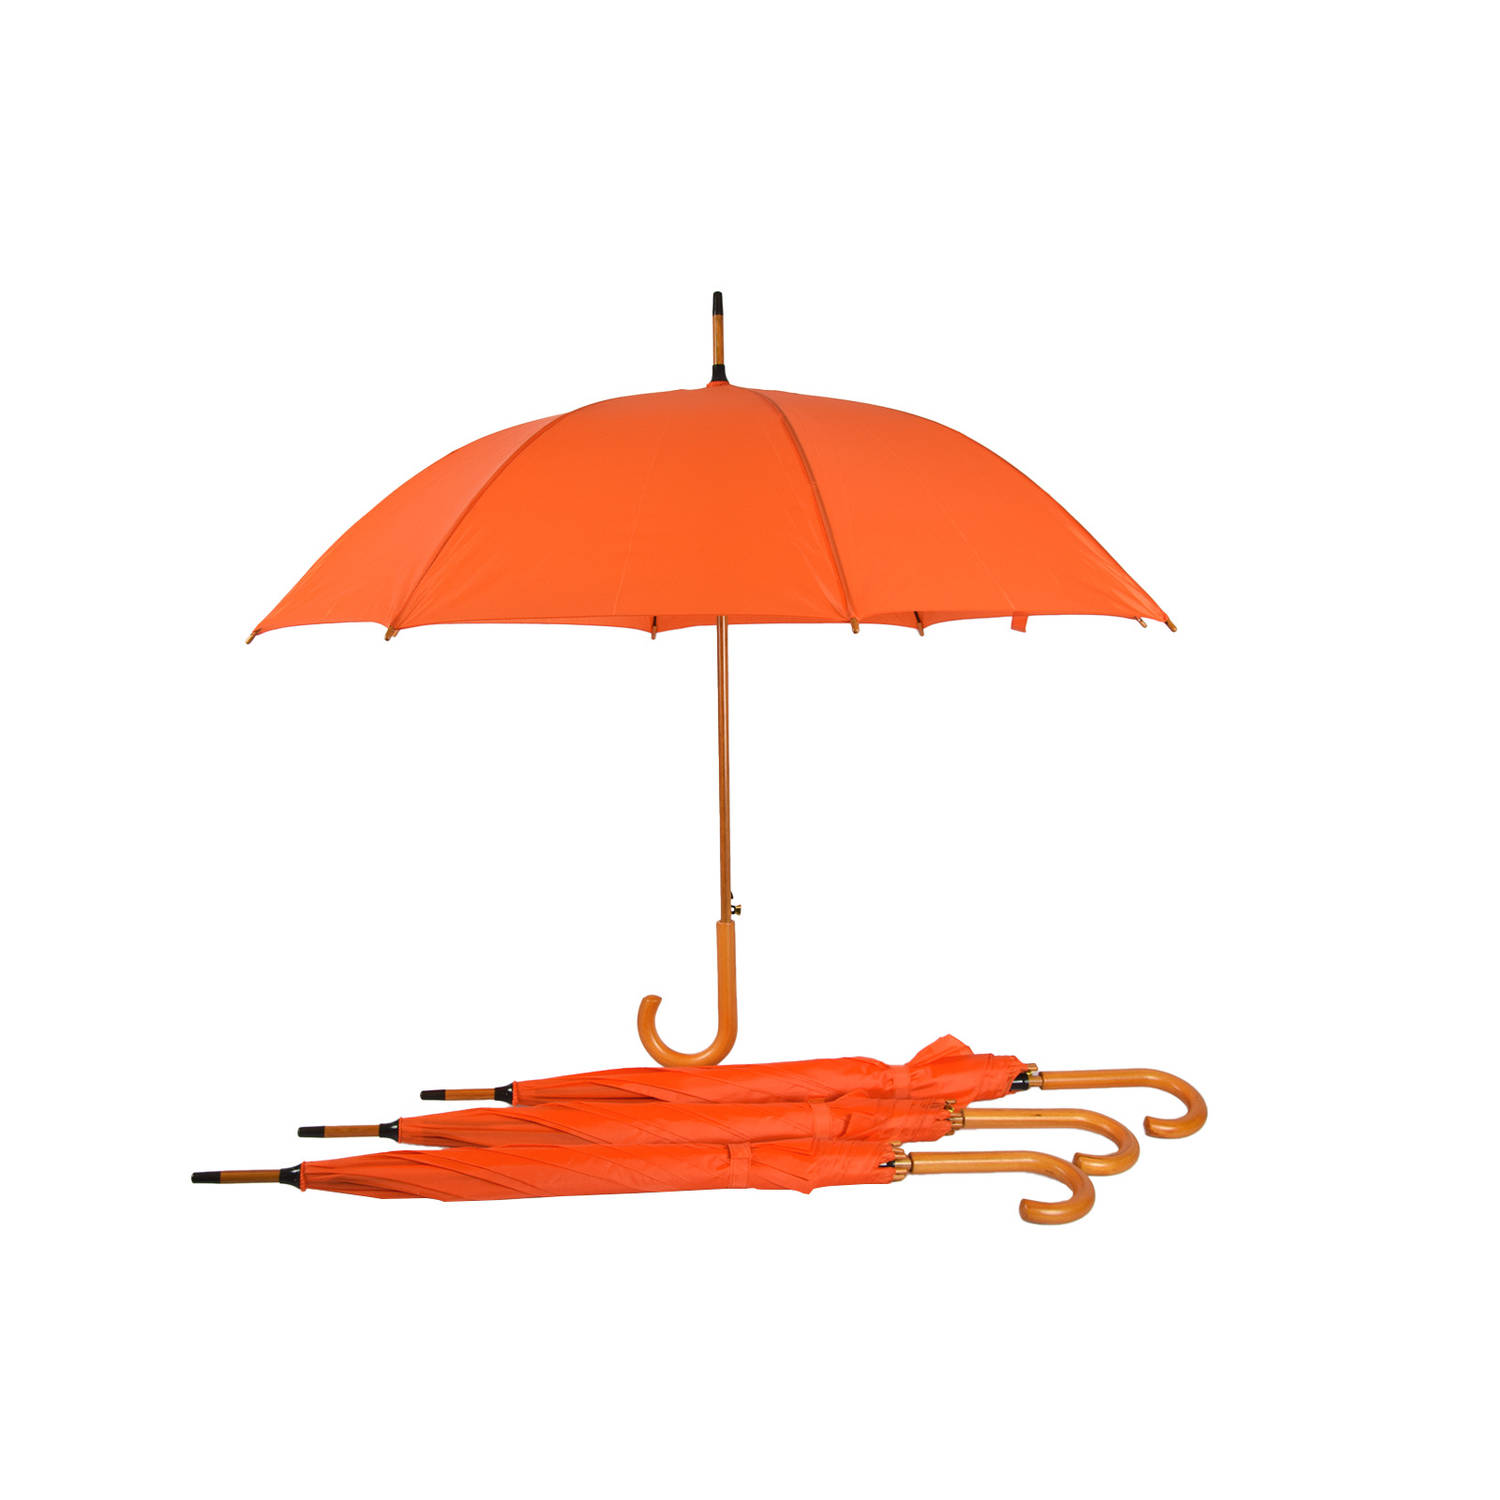 Set van 4 Oranje Automatische Paraplu's 102cm - Windbestendig Paraplu Voor Volwassenen - Ideaal voor Koningsdag!